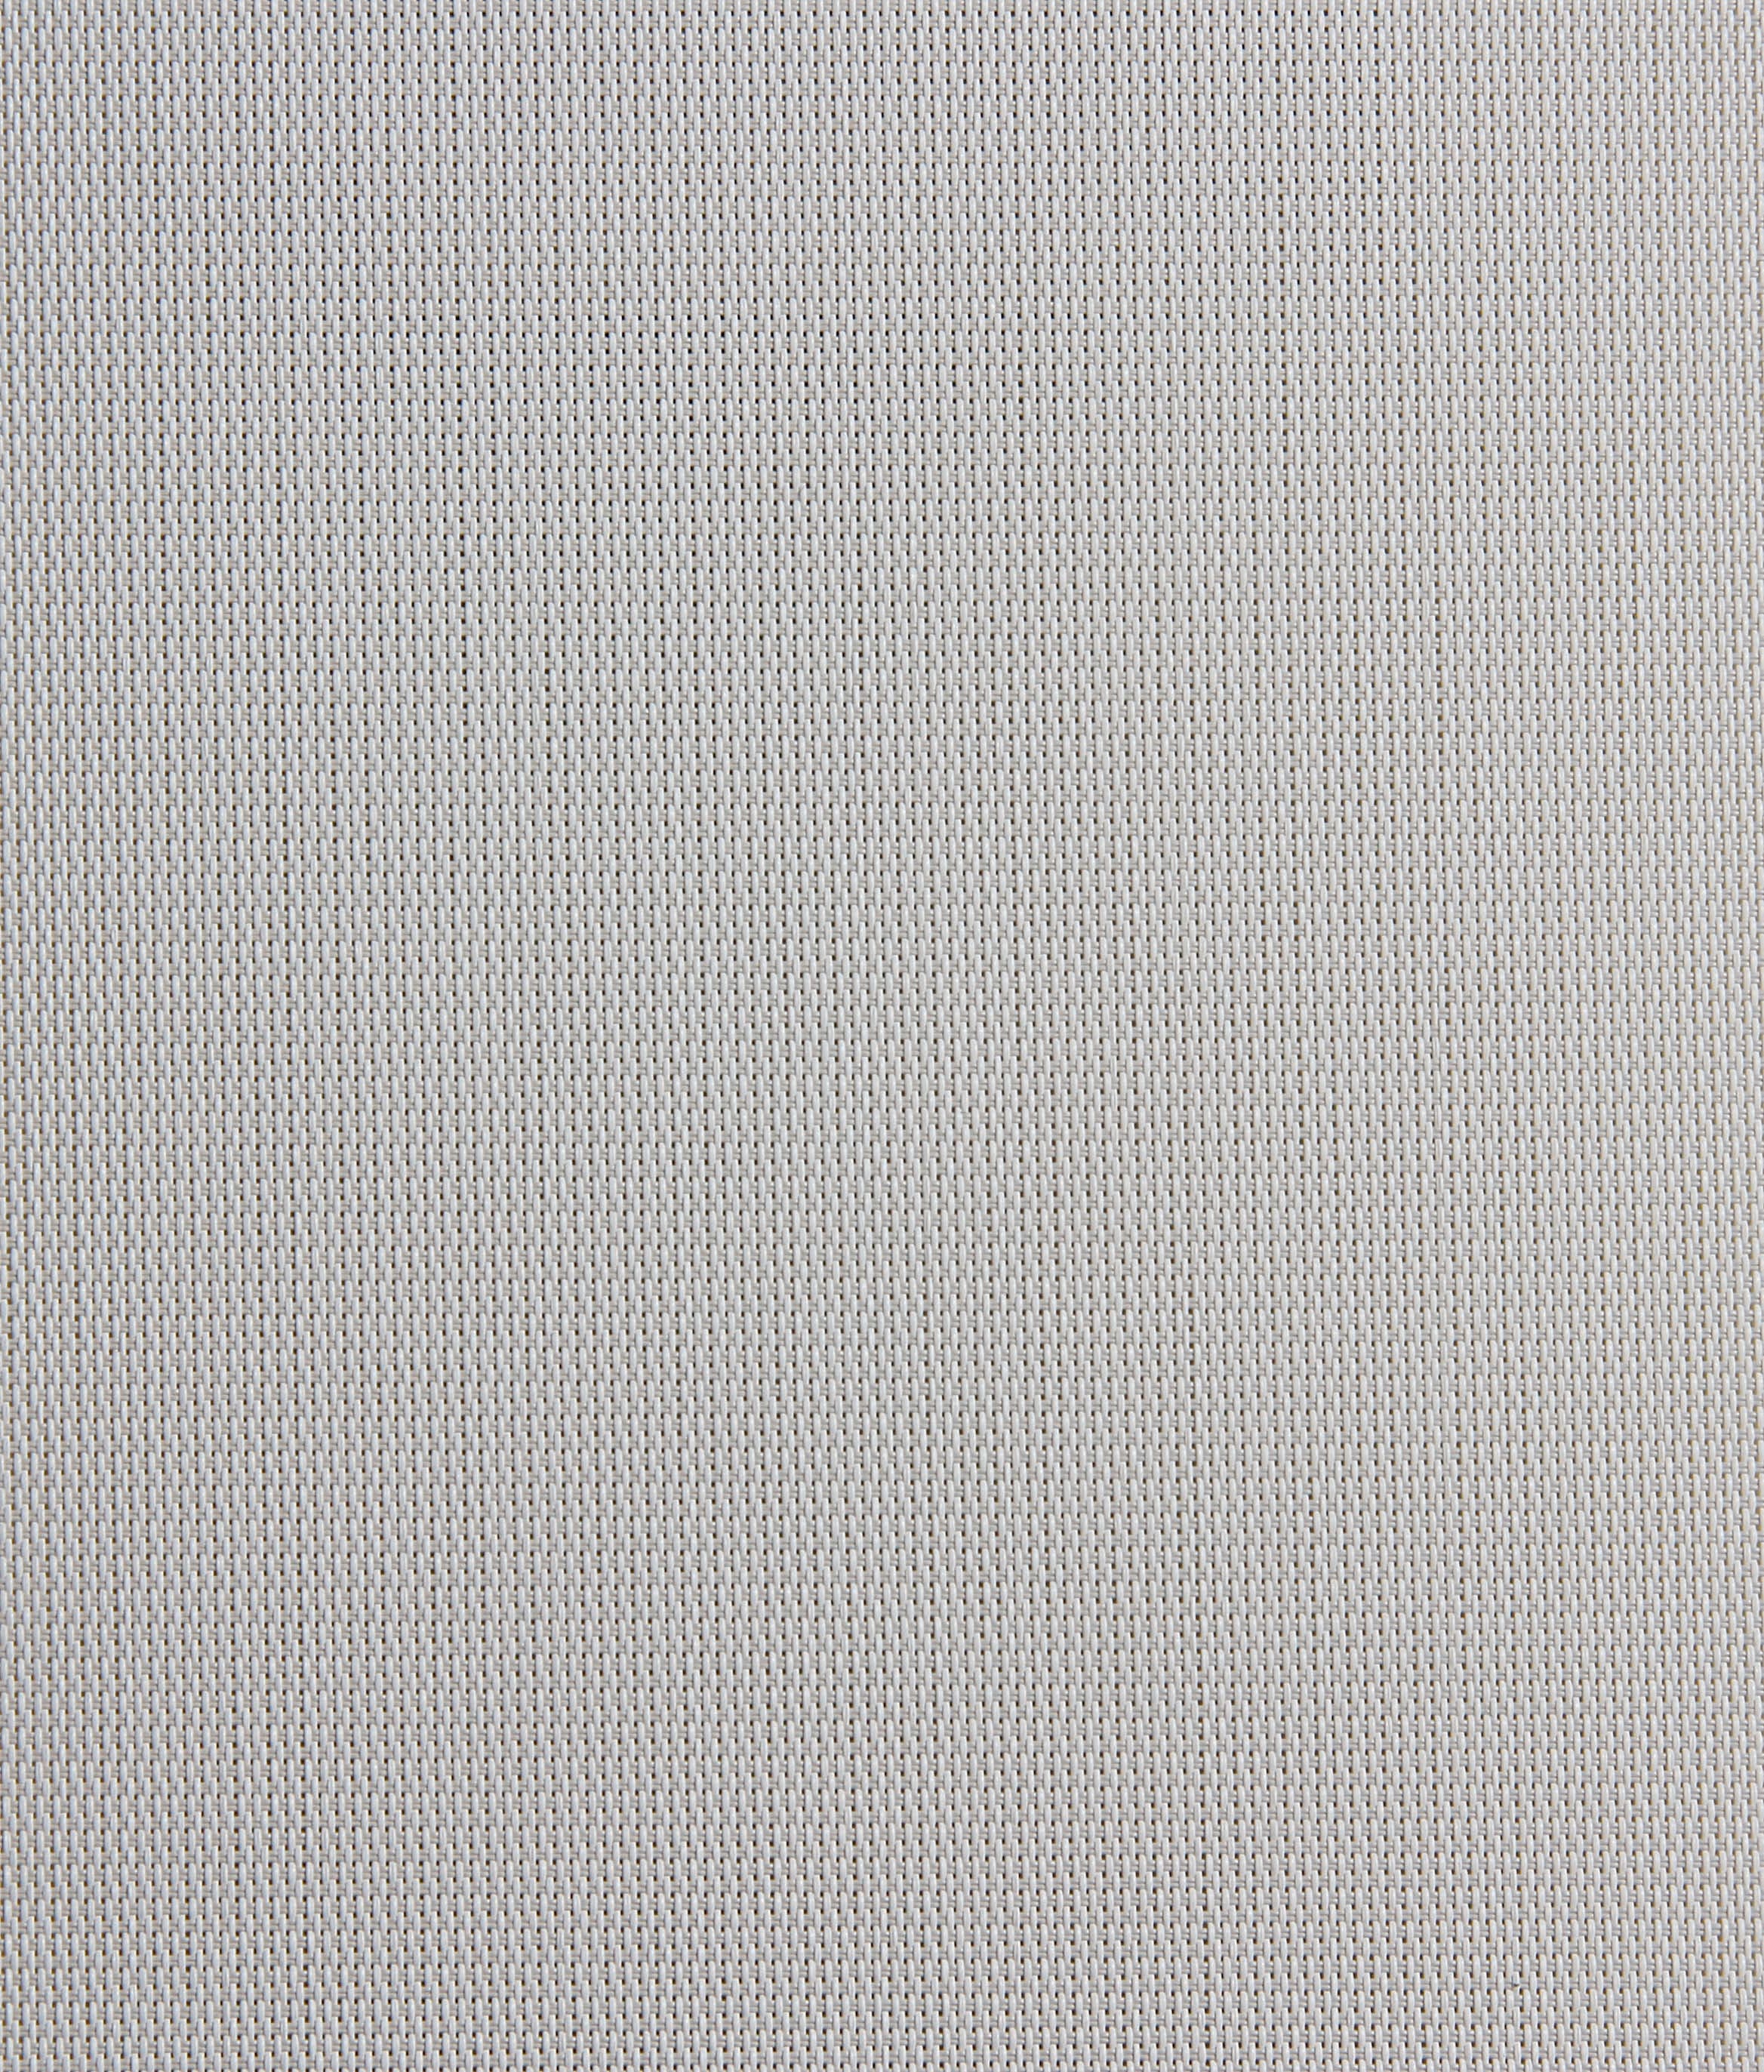 Sheerweave4300-white-stone-Fabric.jpg